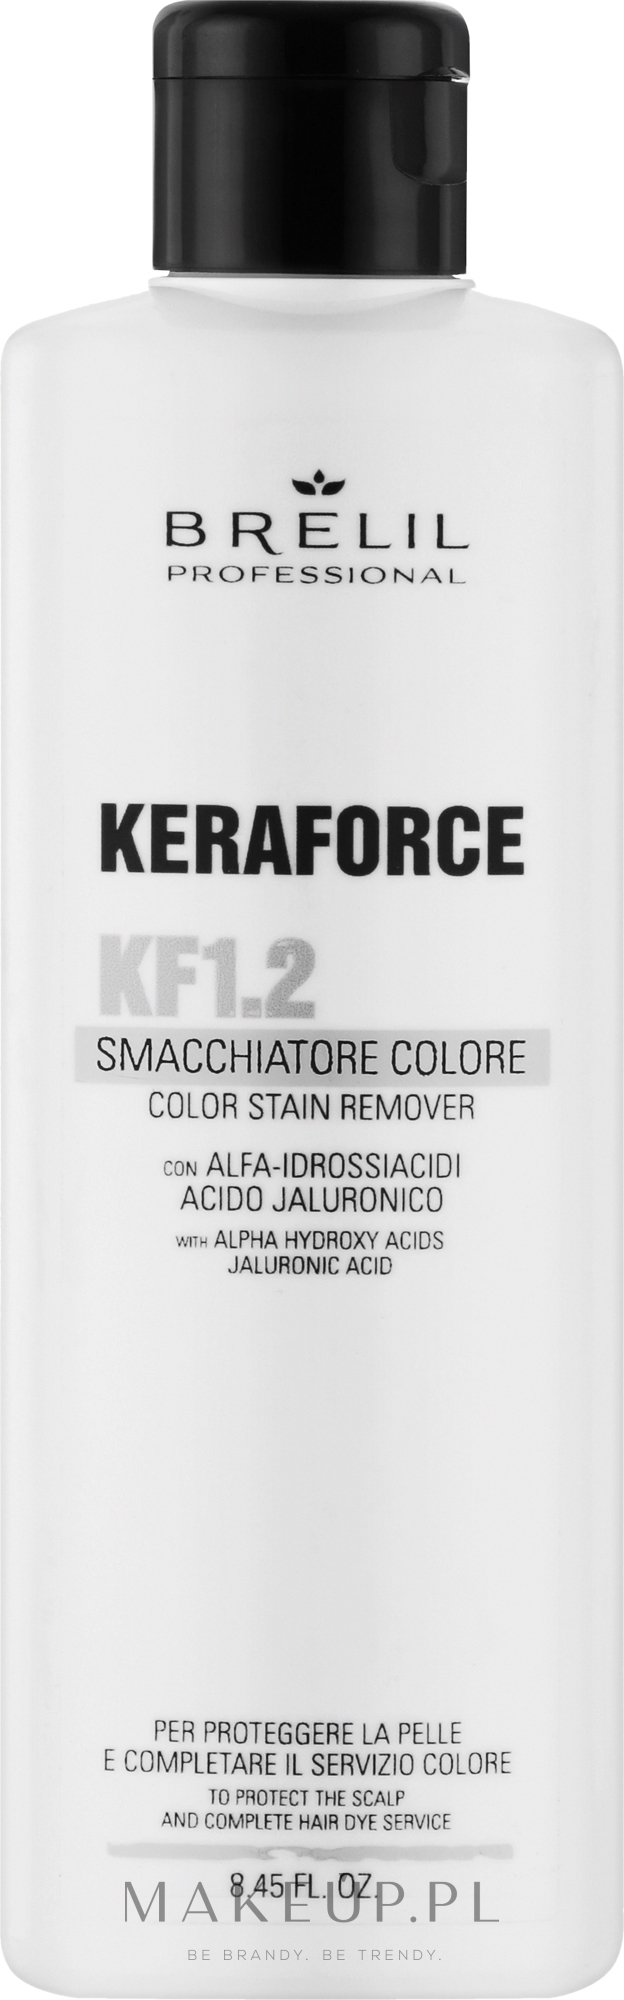 Środek do usuwania barwników po farbowaniu włosów - Brelil Keraforce KF1.2 Color Stain Remover — Zdjęcie 250 ml